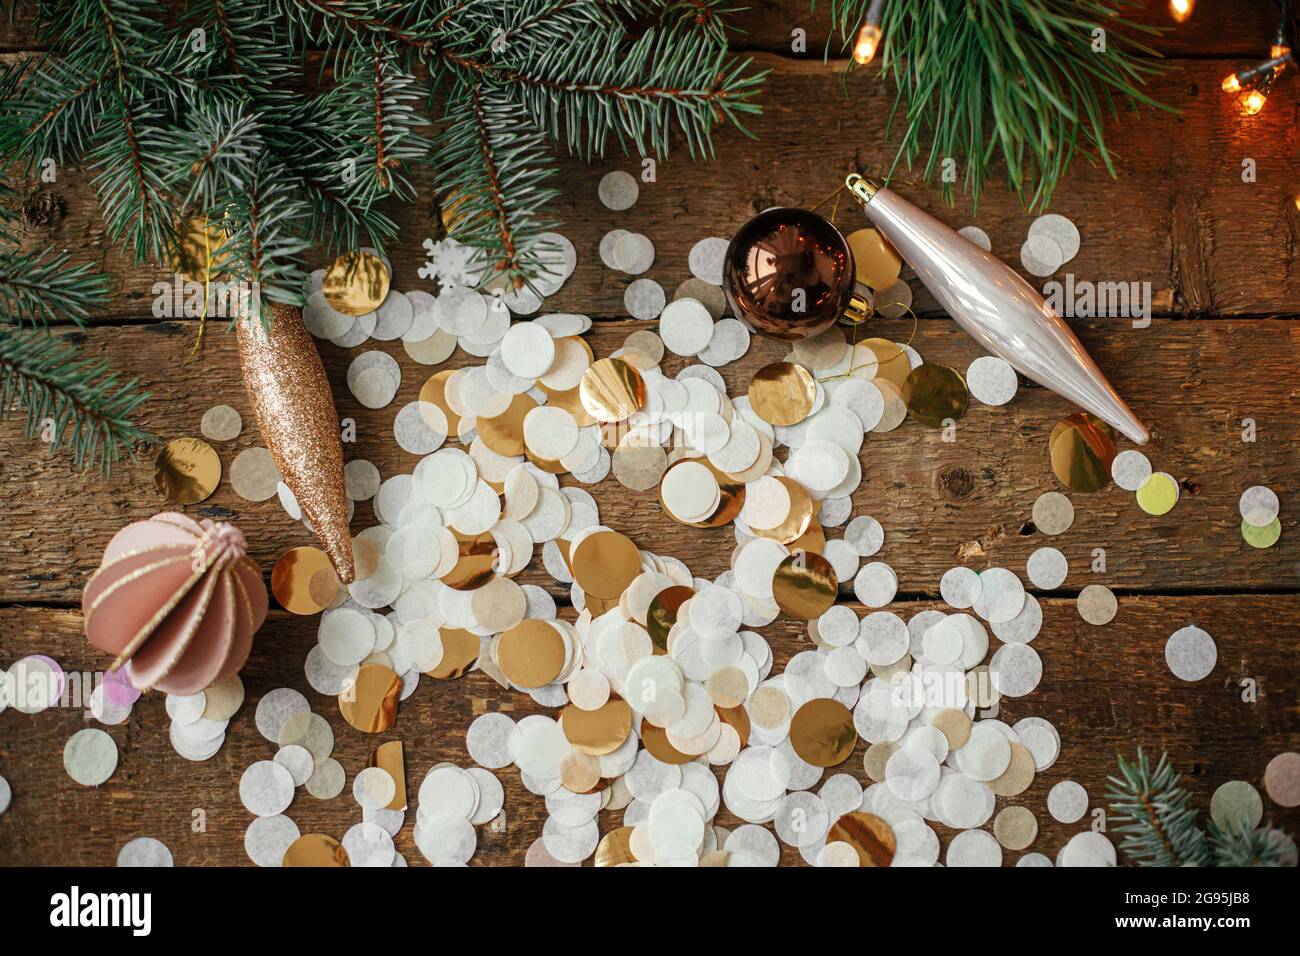 Stilvolle weihnachtsschmuck, Kugeln, goldene Konfetti und Kiefernzweige mit  festlichen Lichtern auf rustikalem Holzhintergrund. Flach liegend. Frohe  Festtagsgrüße Stockfotografie - Alamy